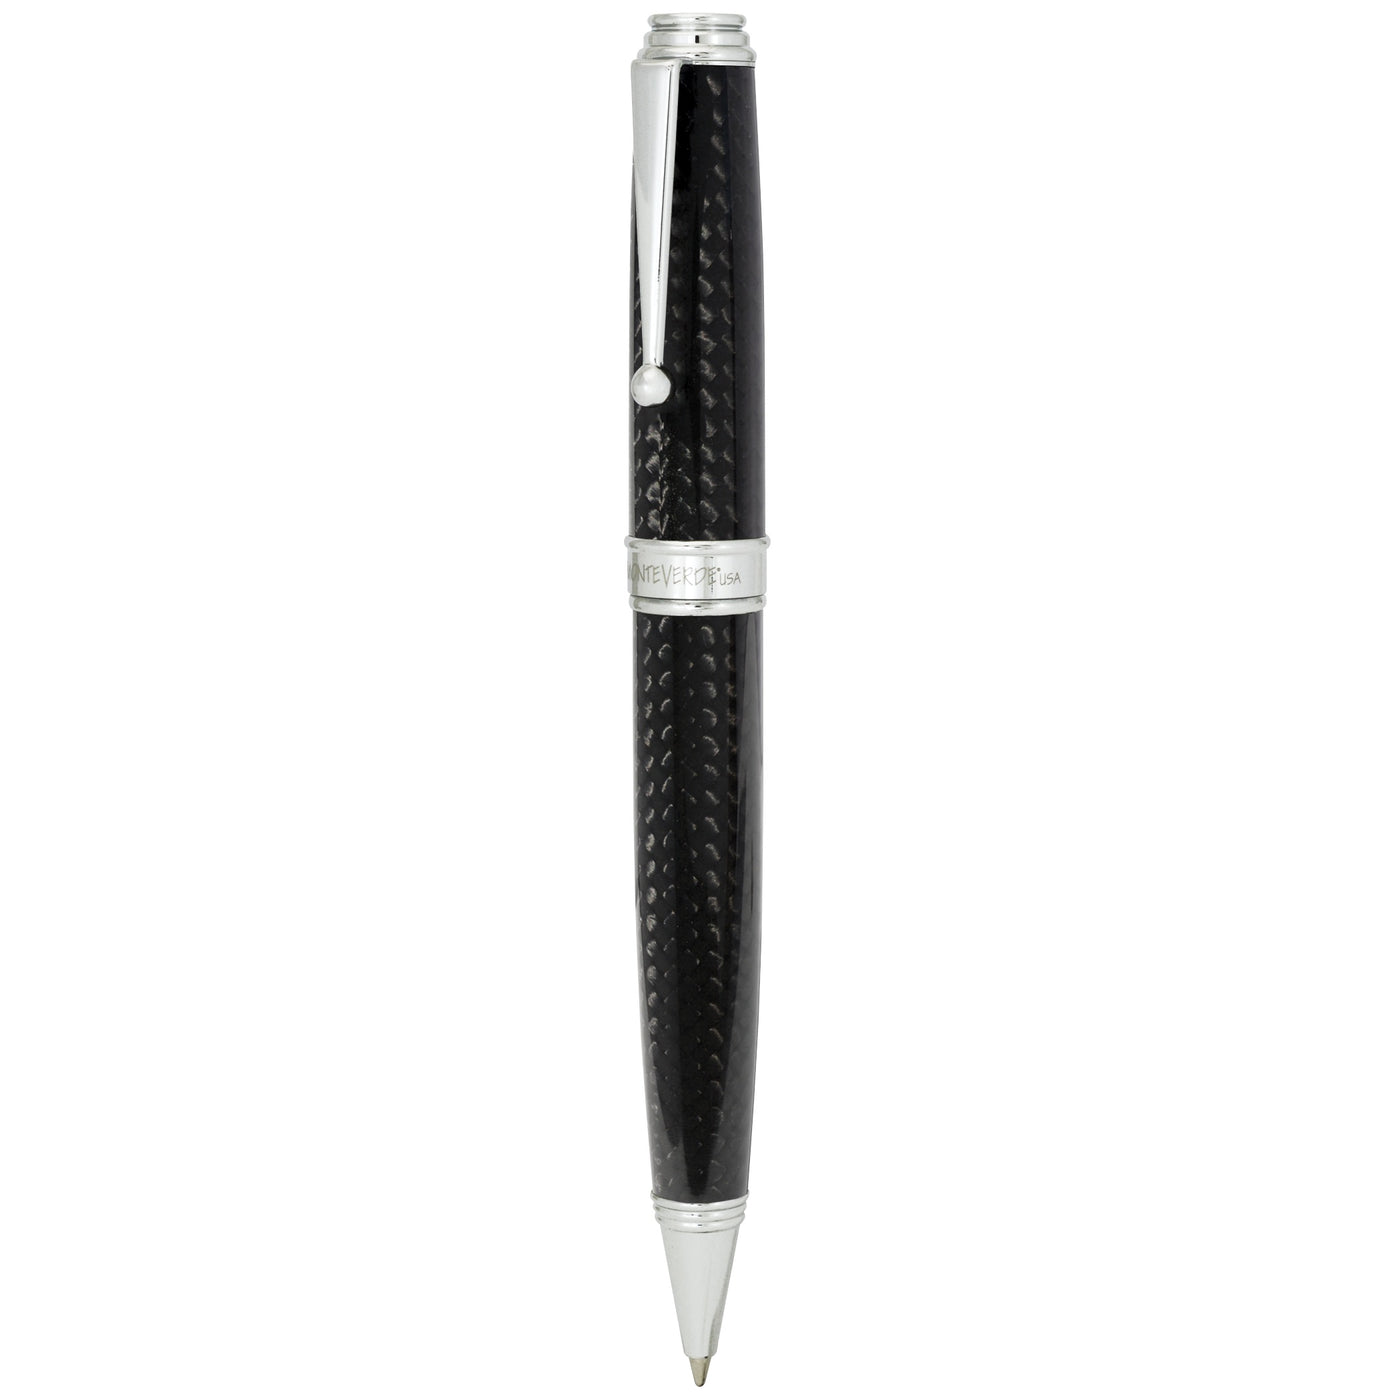 Monteverde Invincia Deluxe Chrome Ballpoint Pen